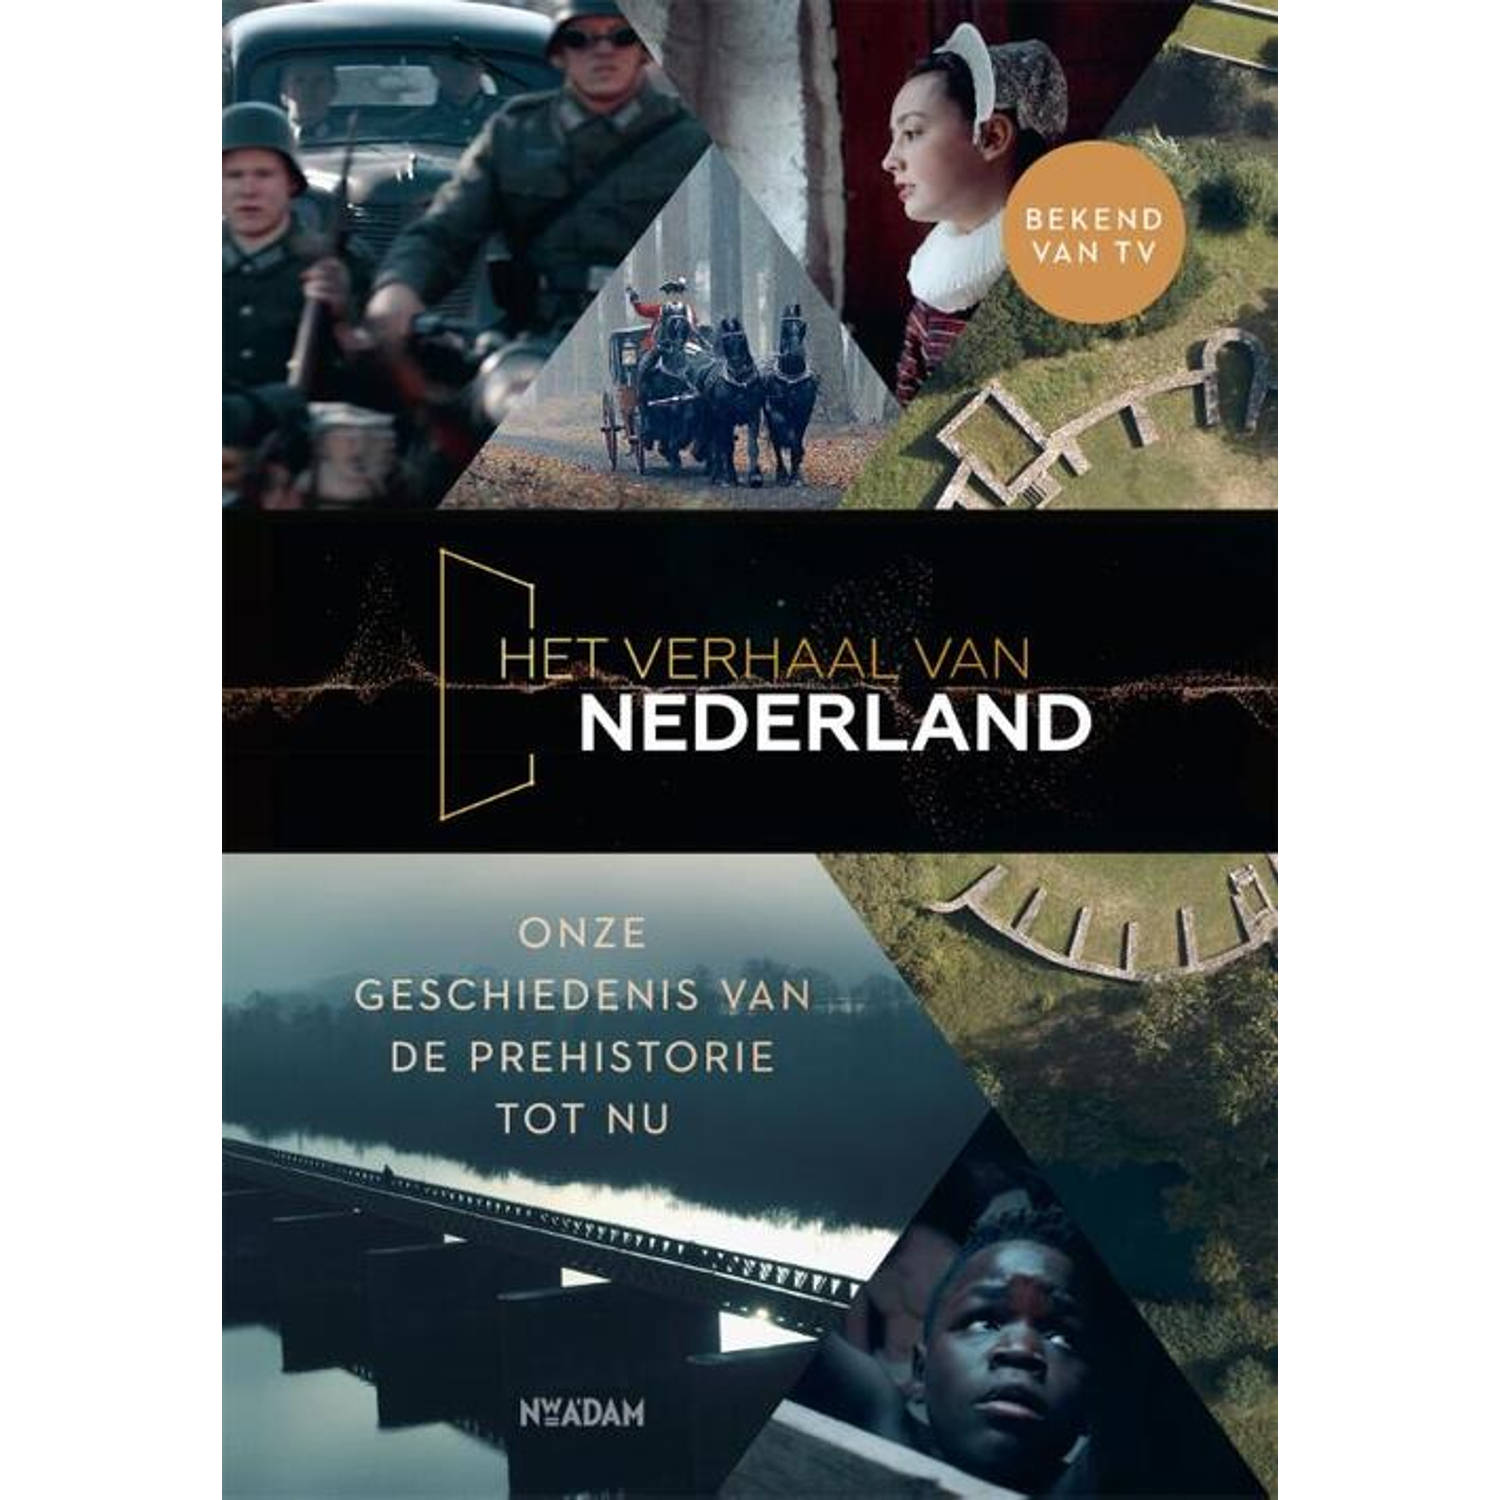 Het verhaal van Nederland